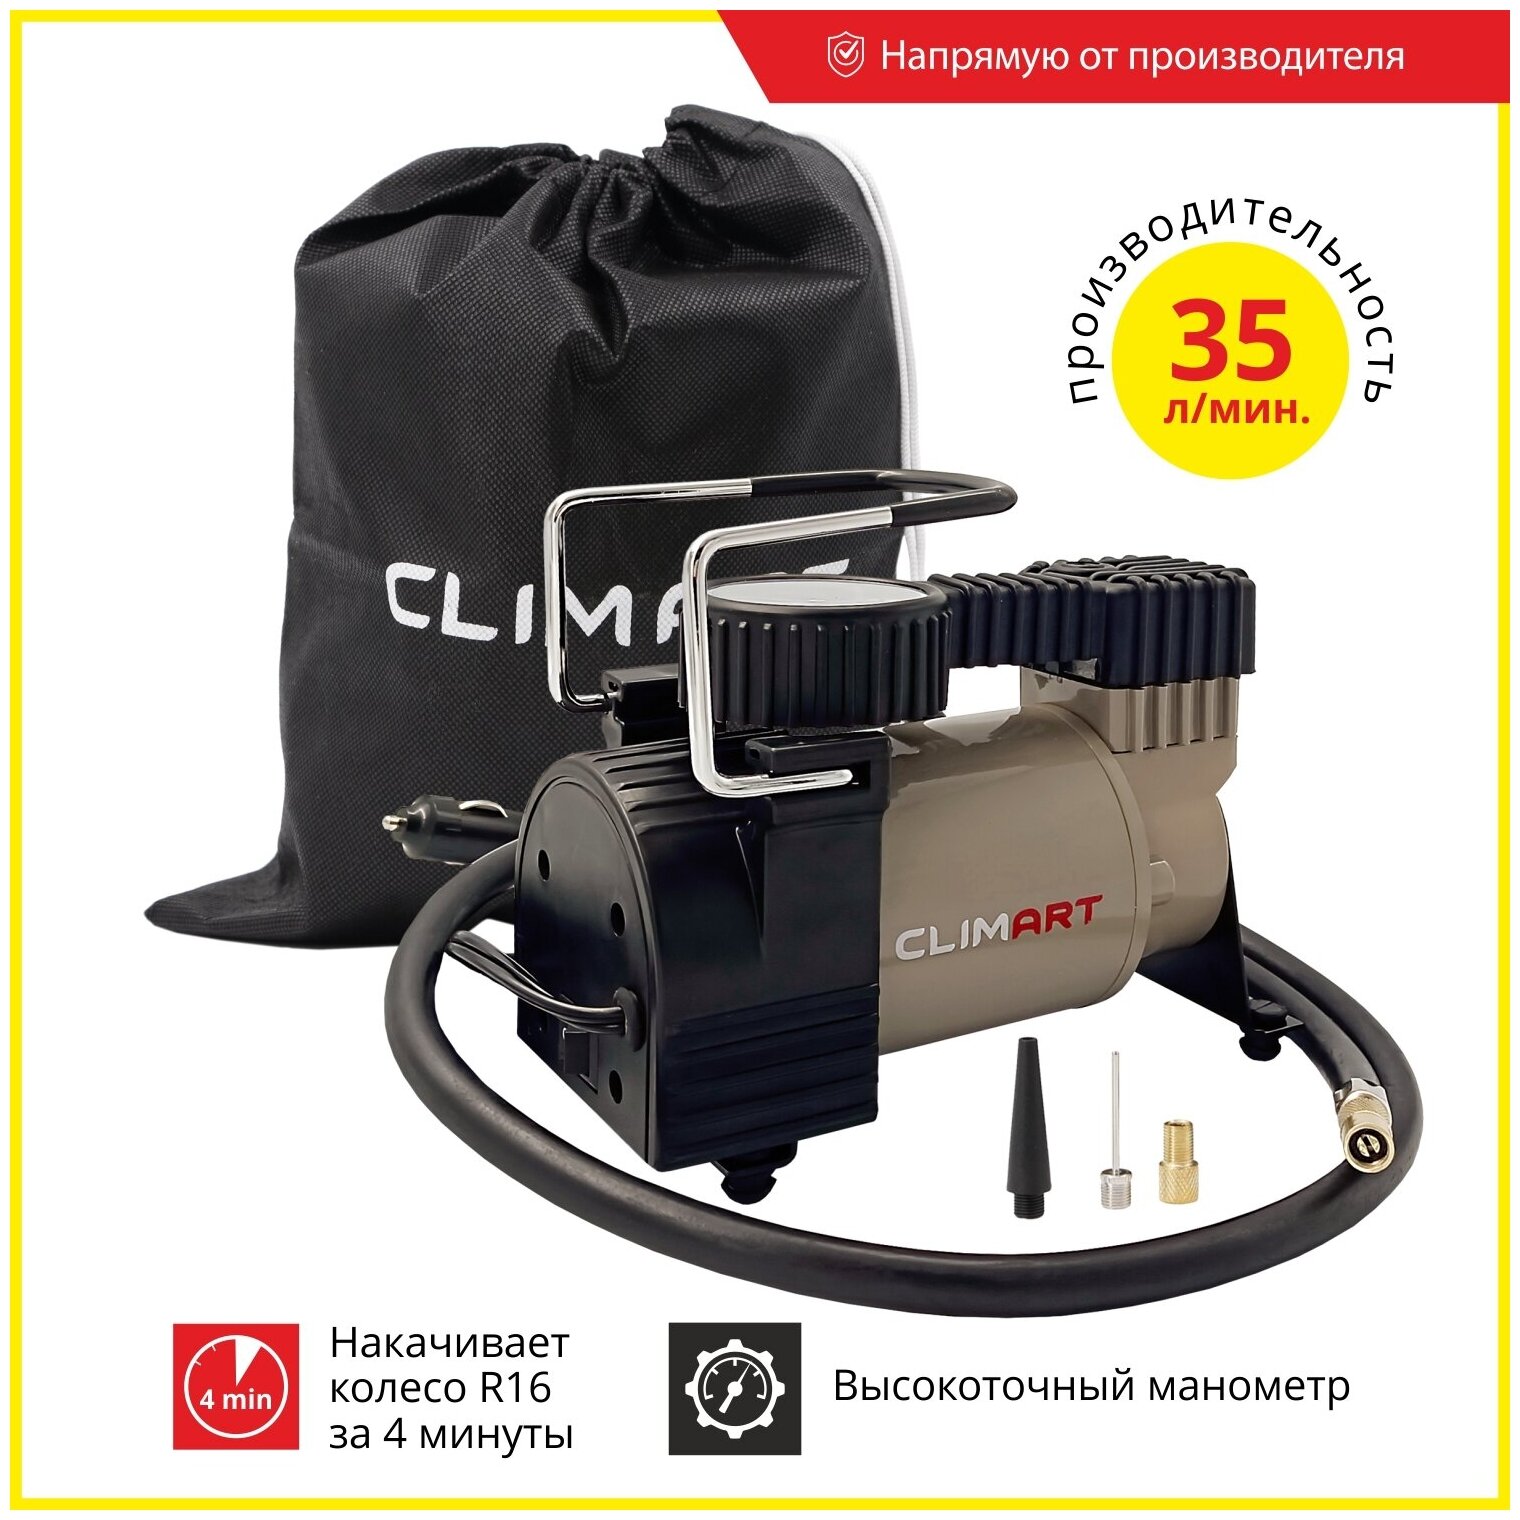 Воздушный компрессор Clim Art CA-35L, 35 л/мин со съемной ручкой, сумка для хранения